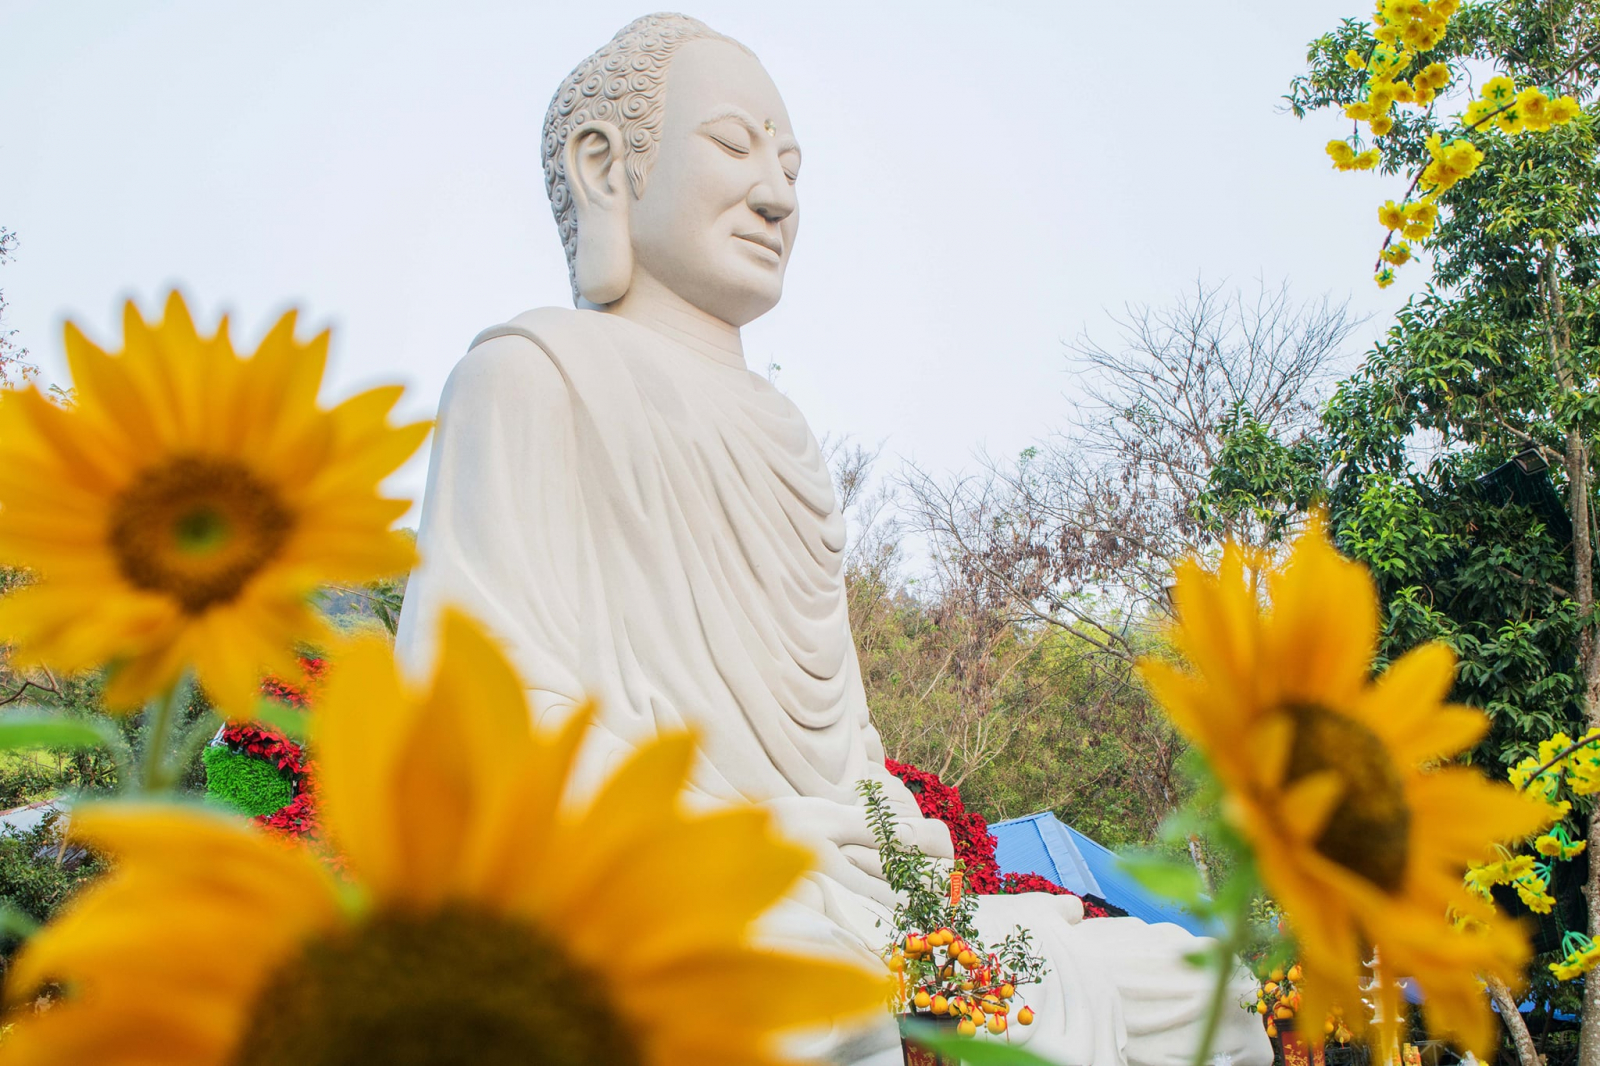 Đức Phật chỉ sử dụng những đức tính tốt đẹp của con người để hóa độ con người.